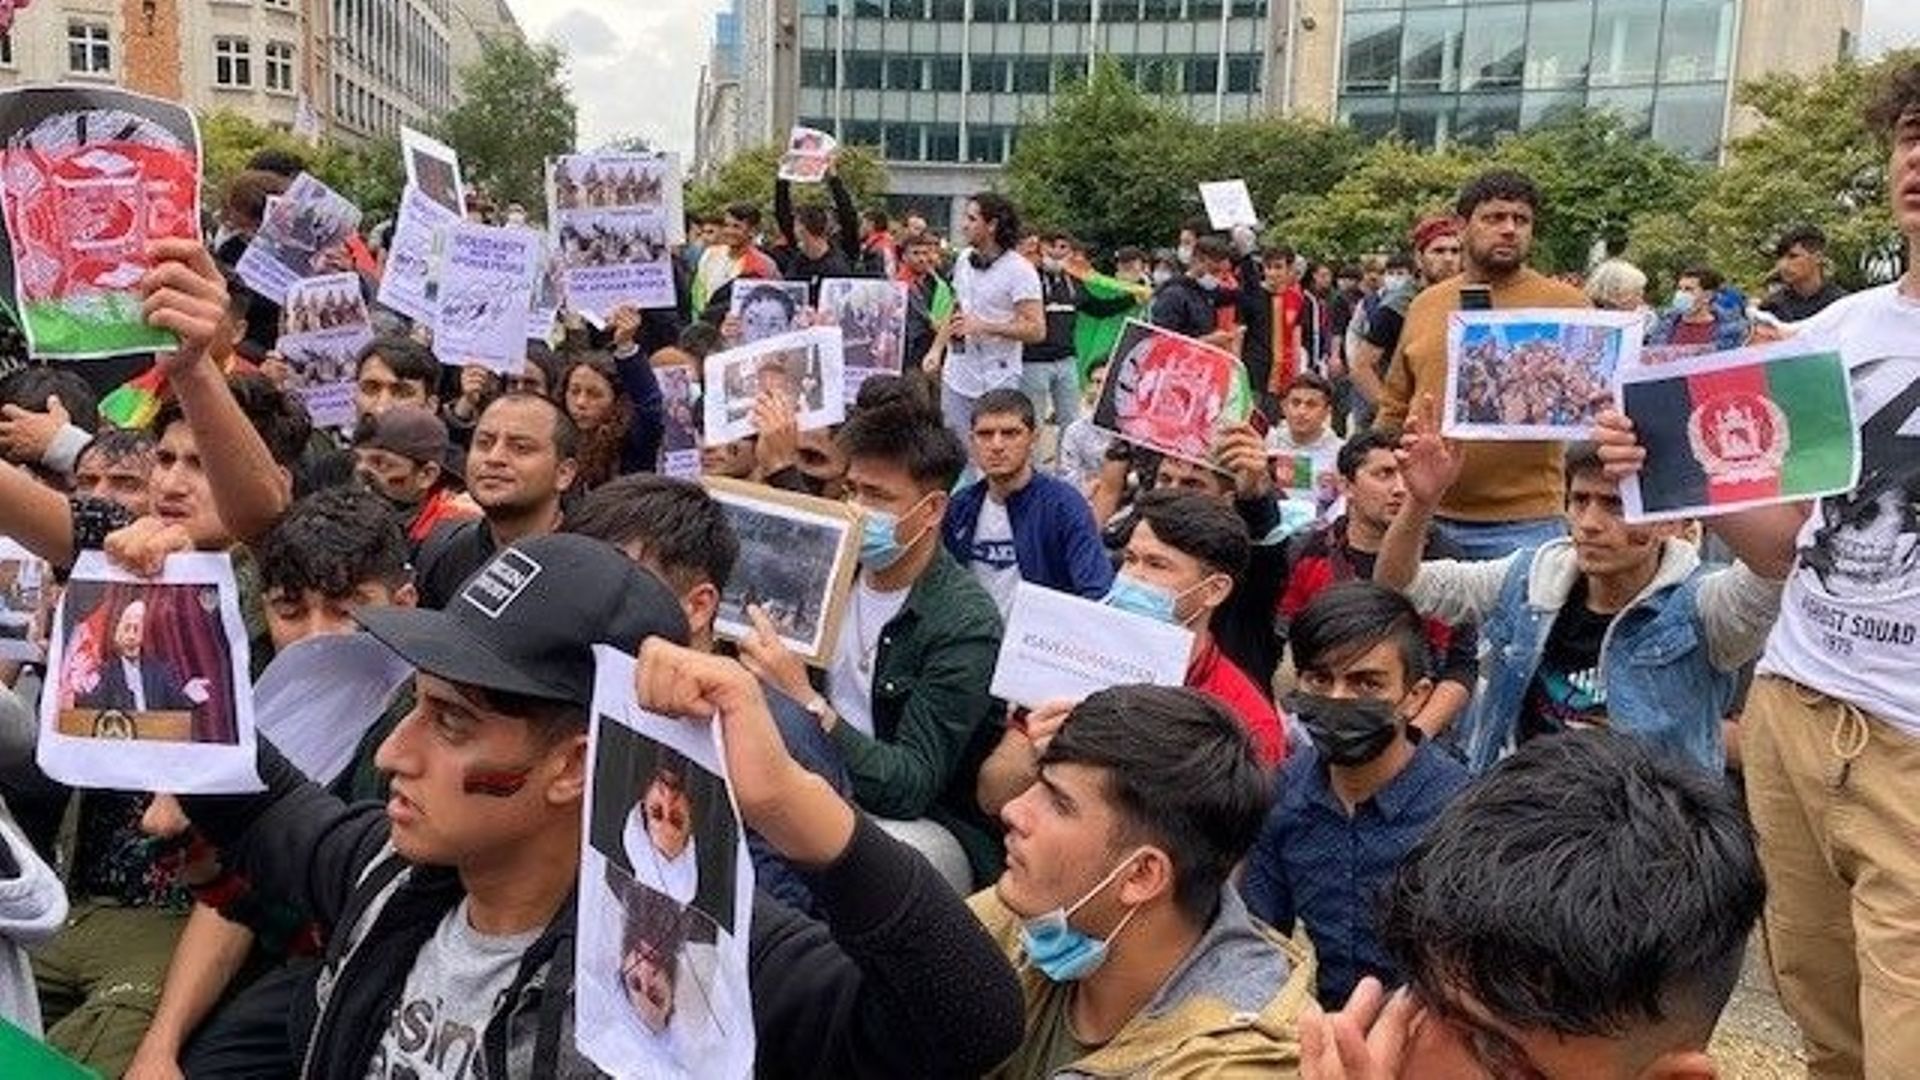 Près de 500 personnes se sont rassemblées ce 18 août, au Rond-Point Schumann à Bruxelles, en soutien aux afghans.